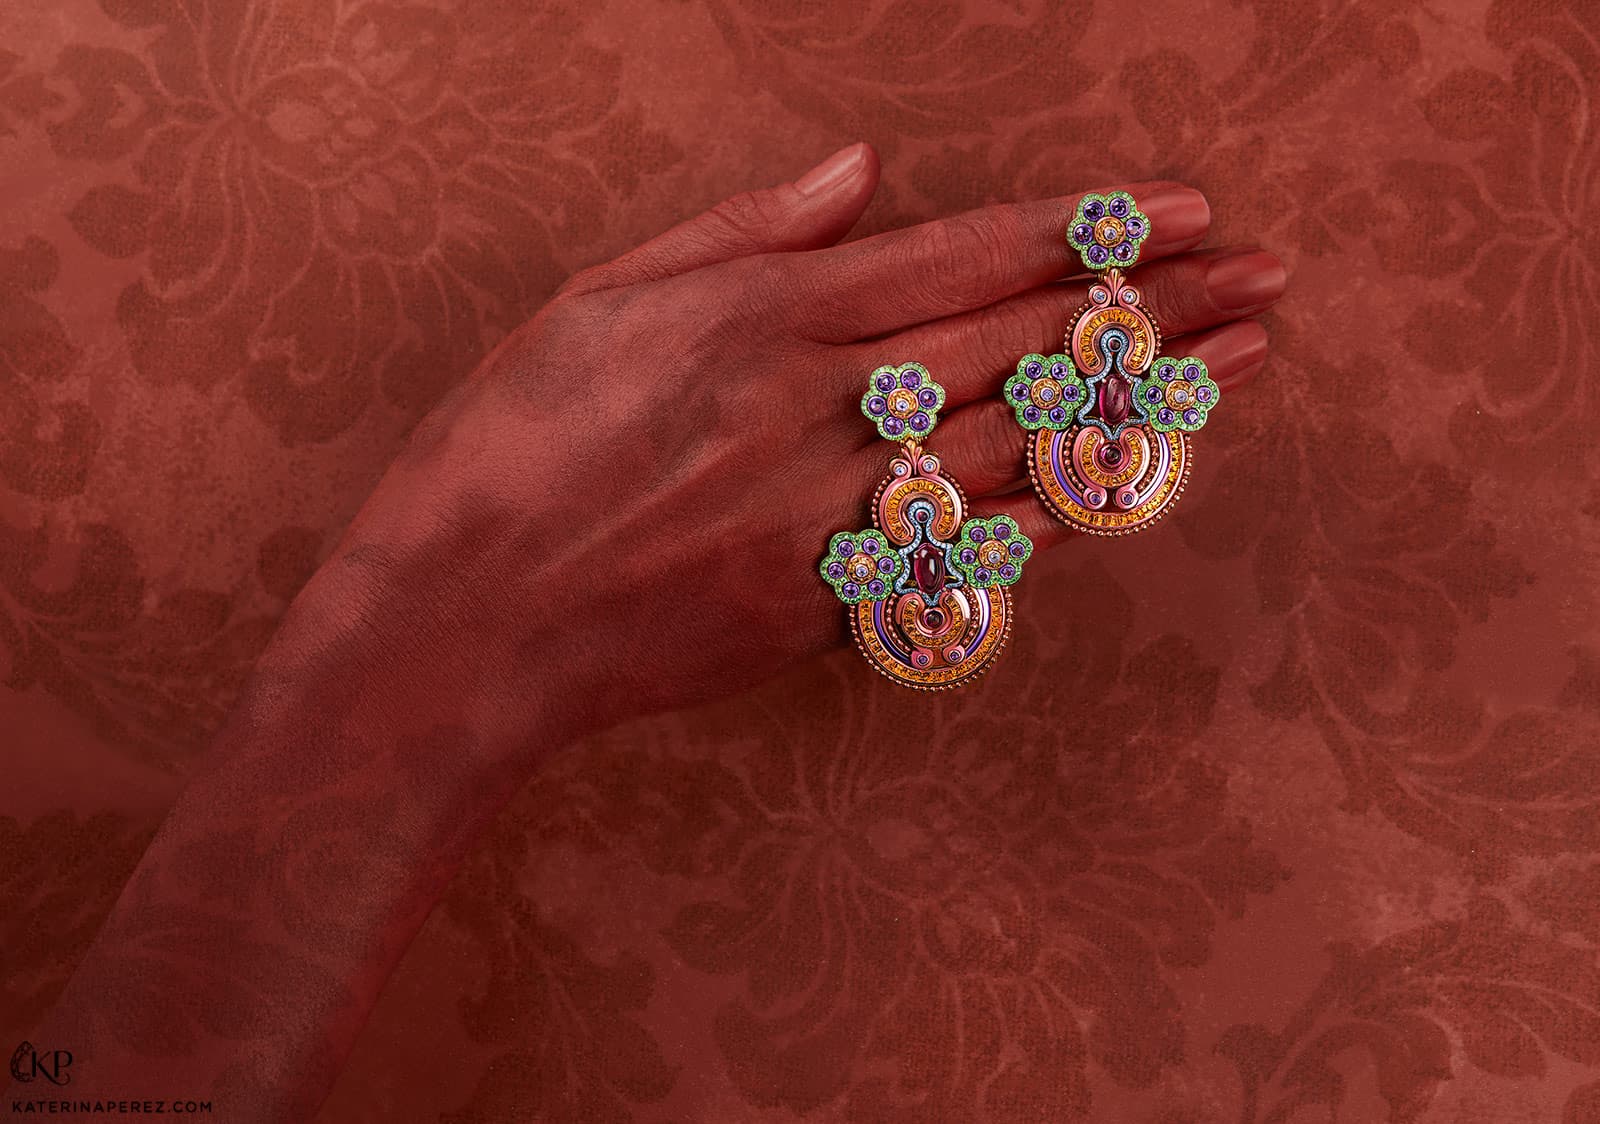 Серьги Chopard из коллекции 'Red Carpet' с сапфирами